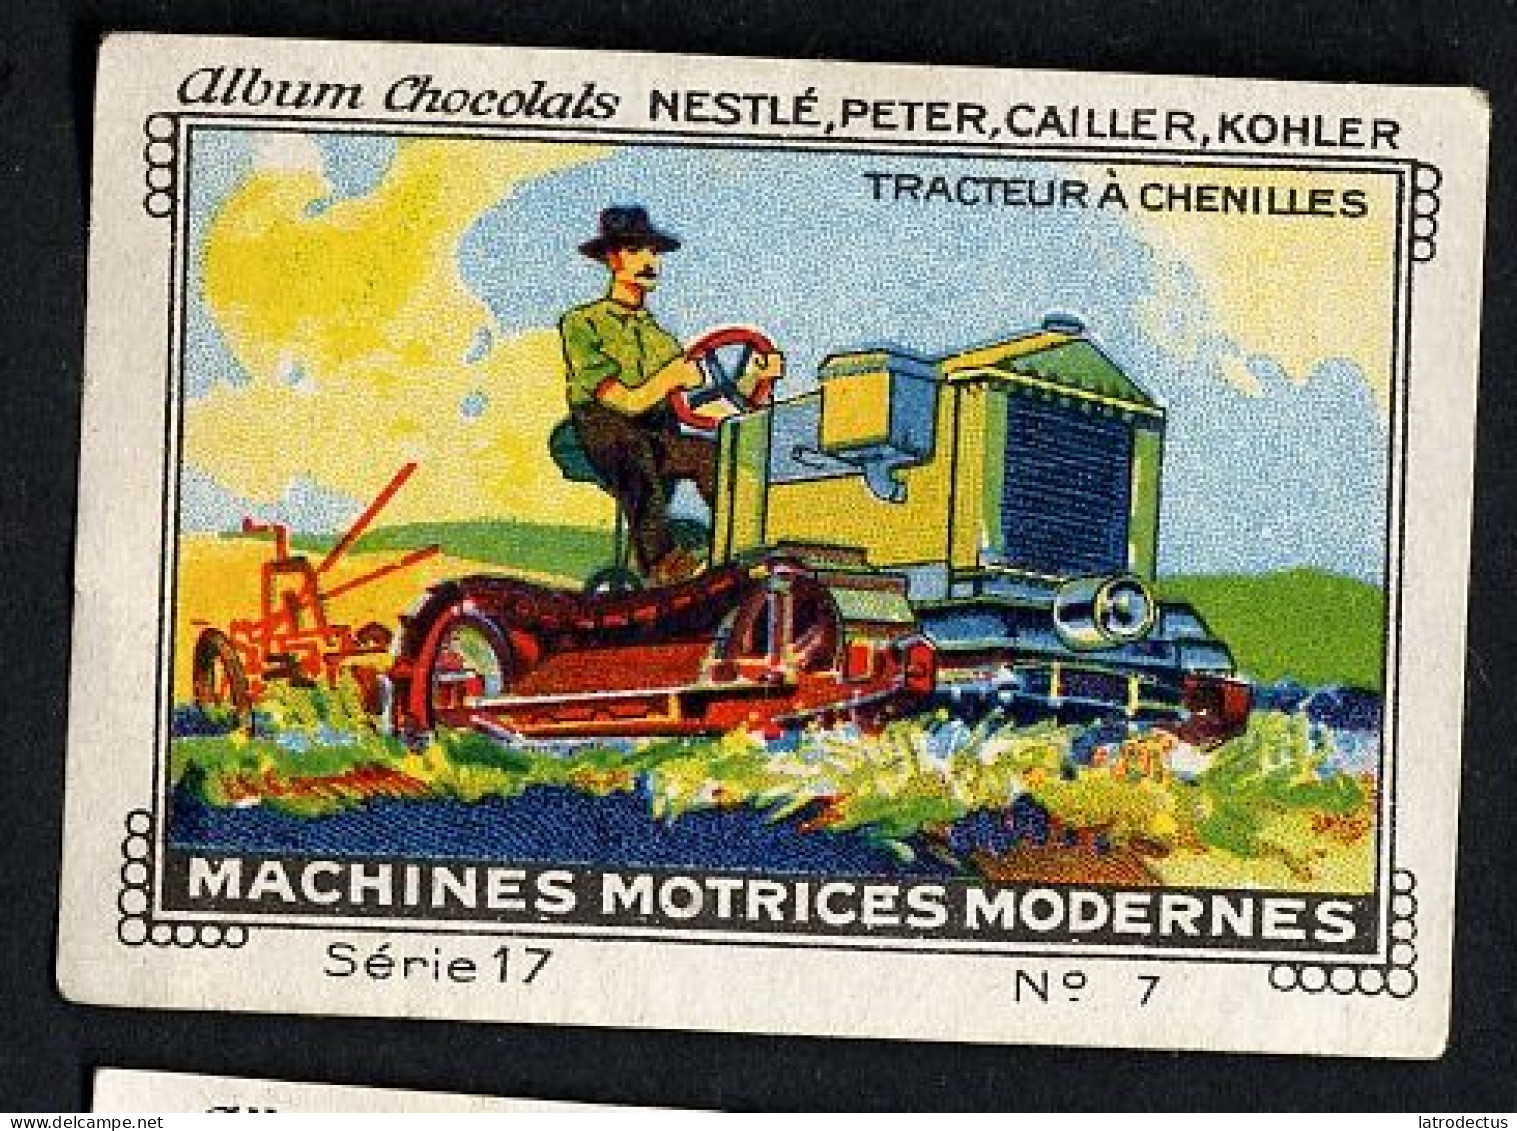 Nestlé - 17 - Machines Motrices Modernes, Modern Machines - 7 - Tracteur à  Chenilles, Crawler Tractor - Nestlé